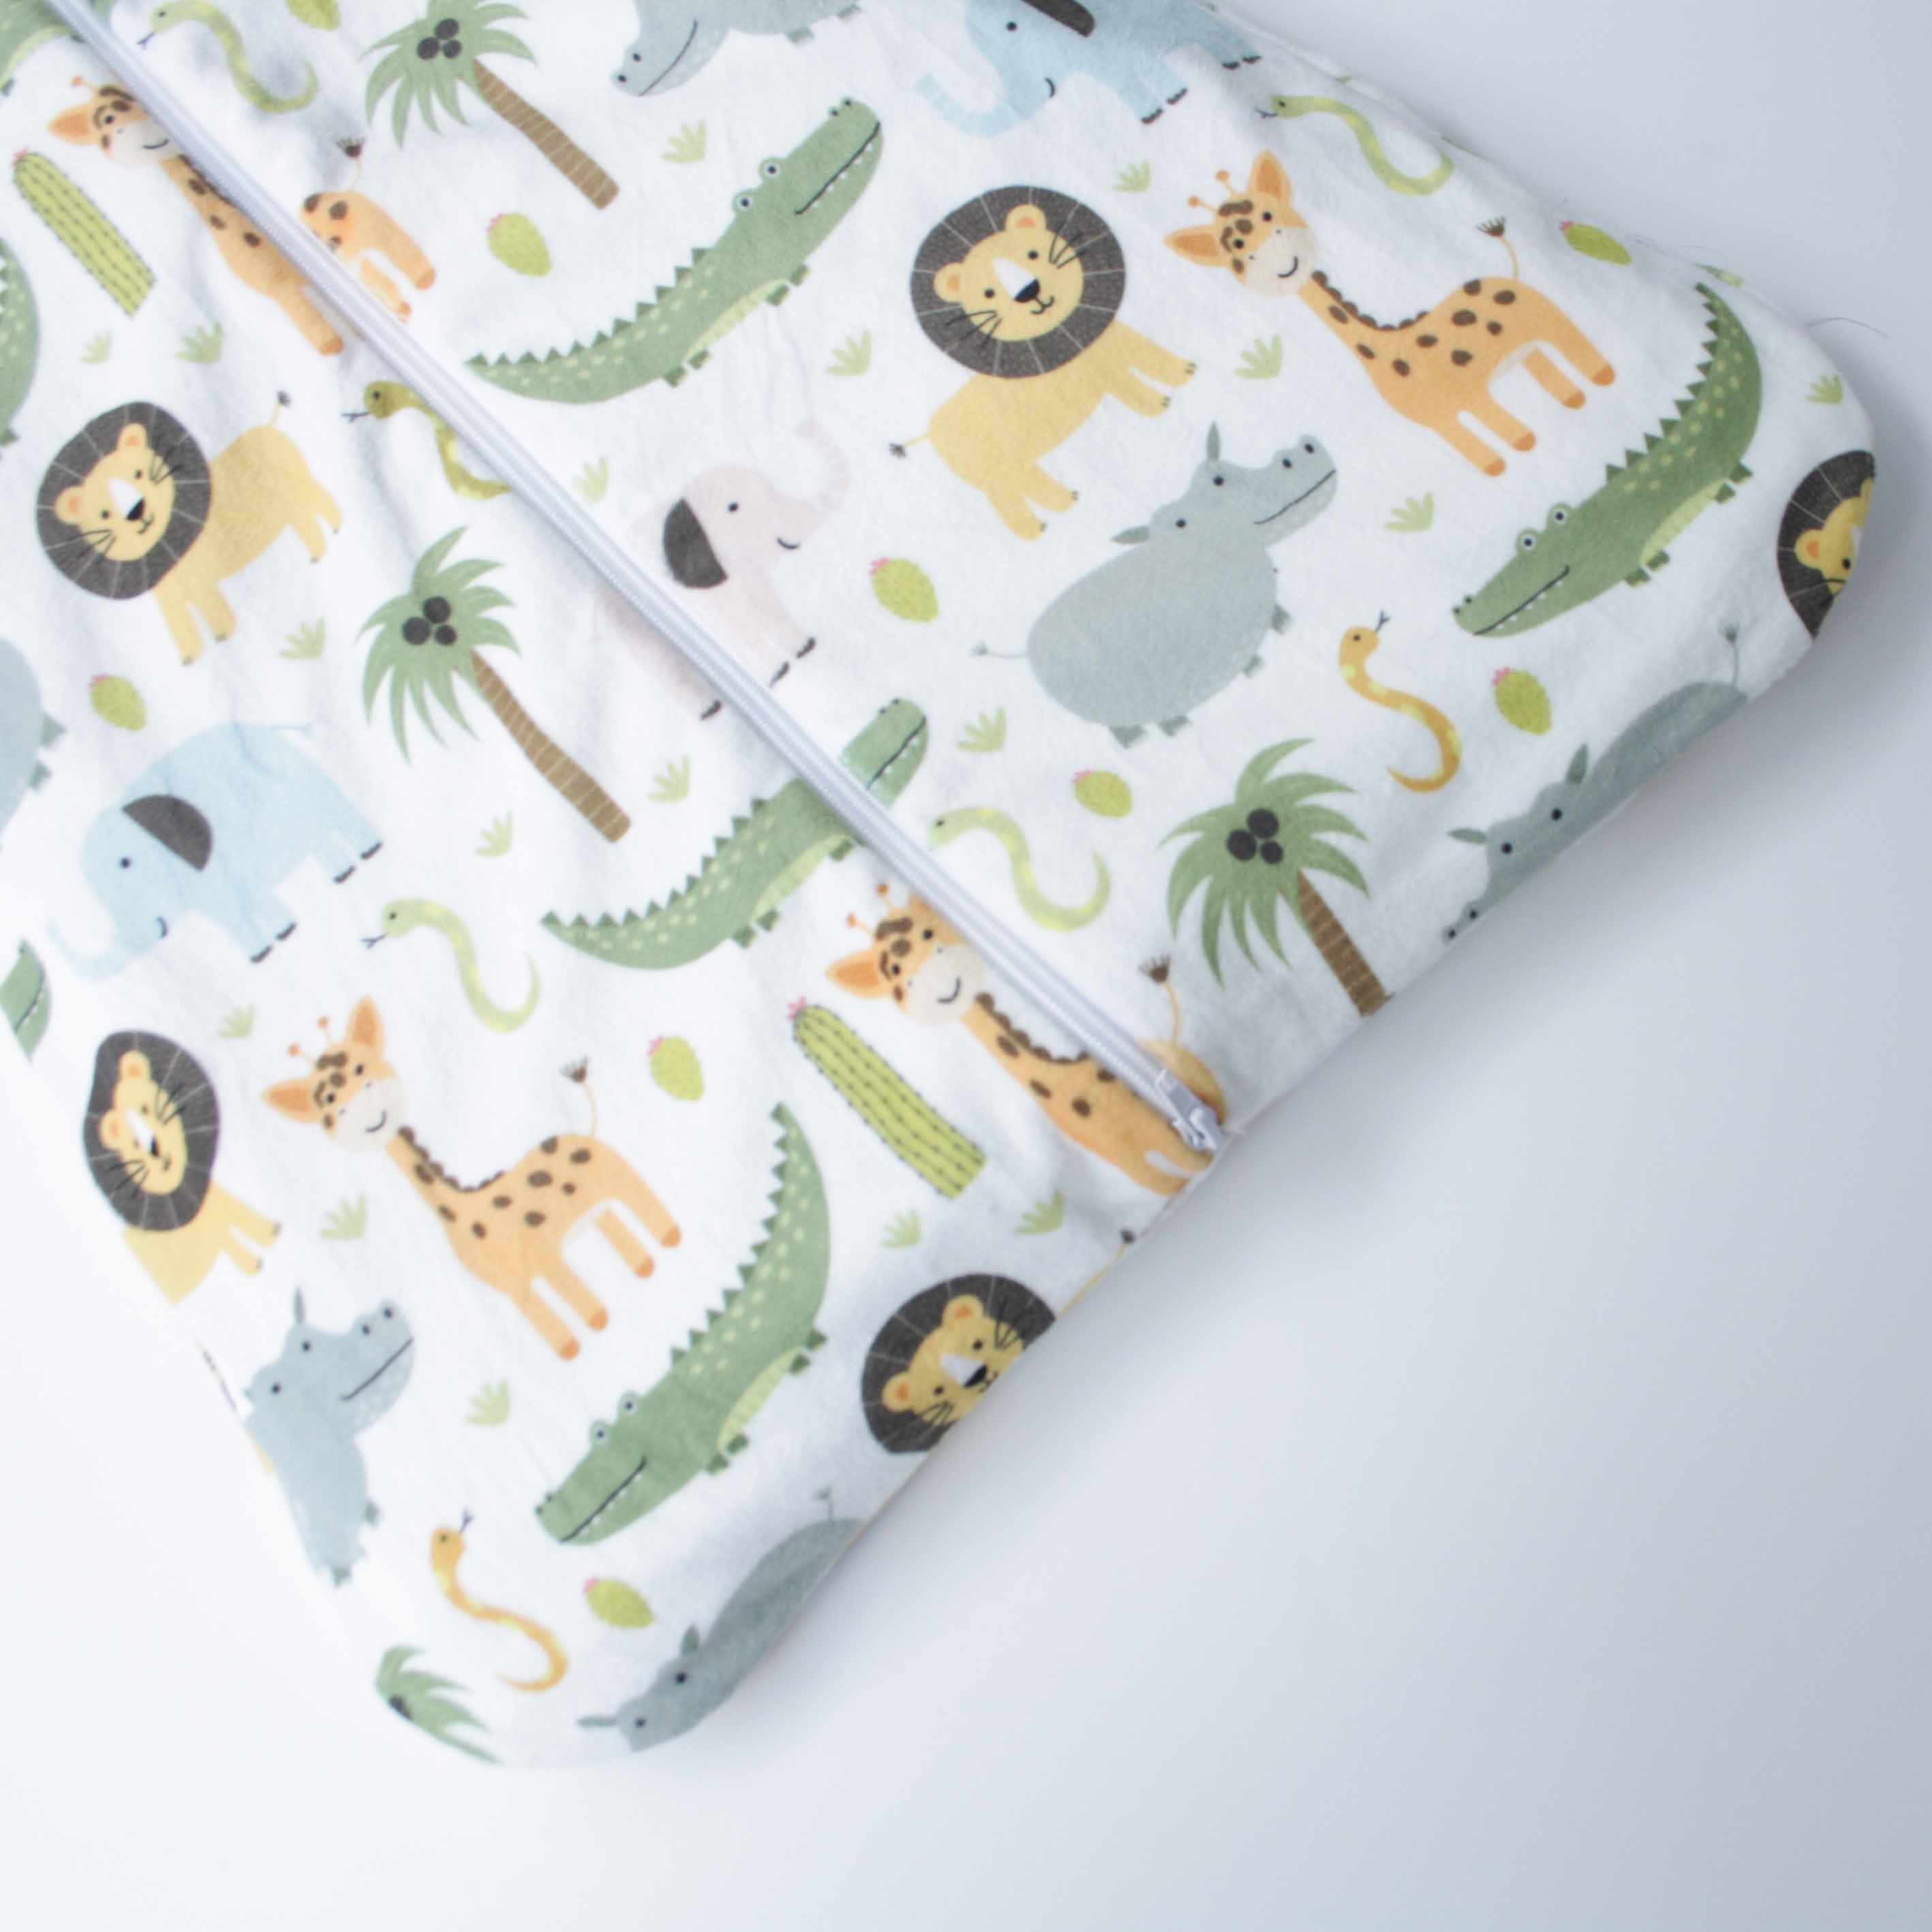 Sleeping bag para Recién Nacido (0-6 meses) - Zoo